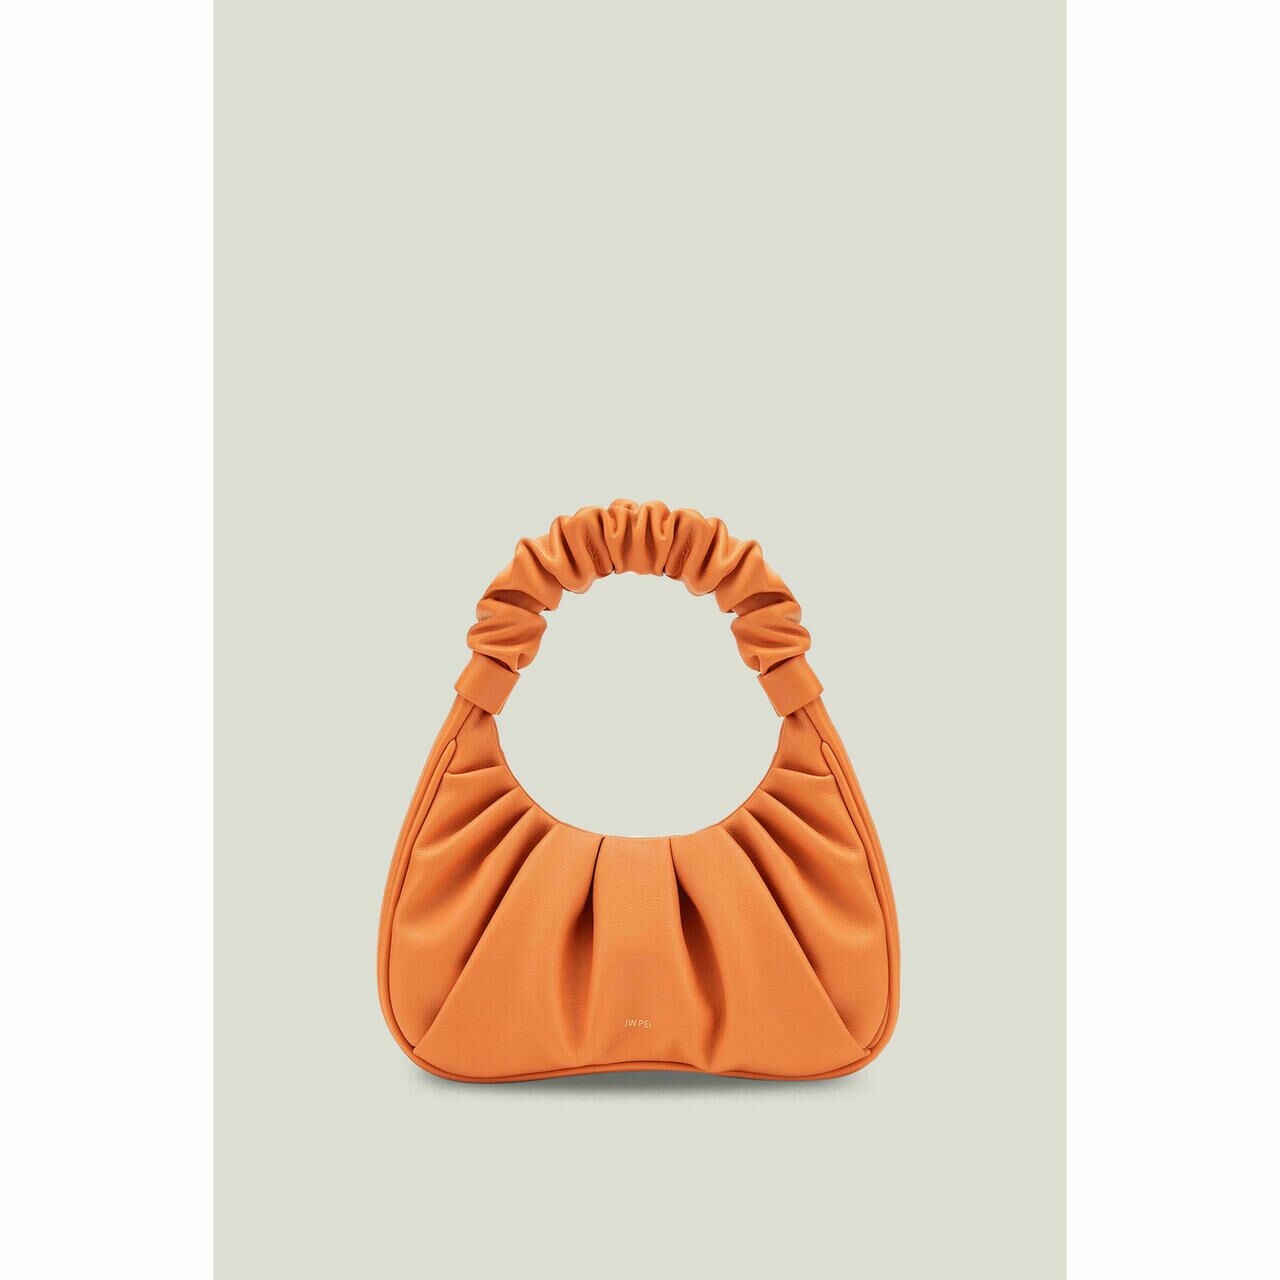 Jw pei Orange Shoulder Bag